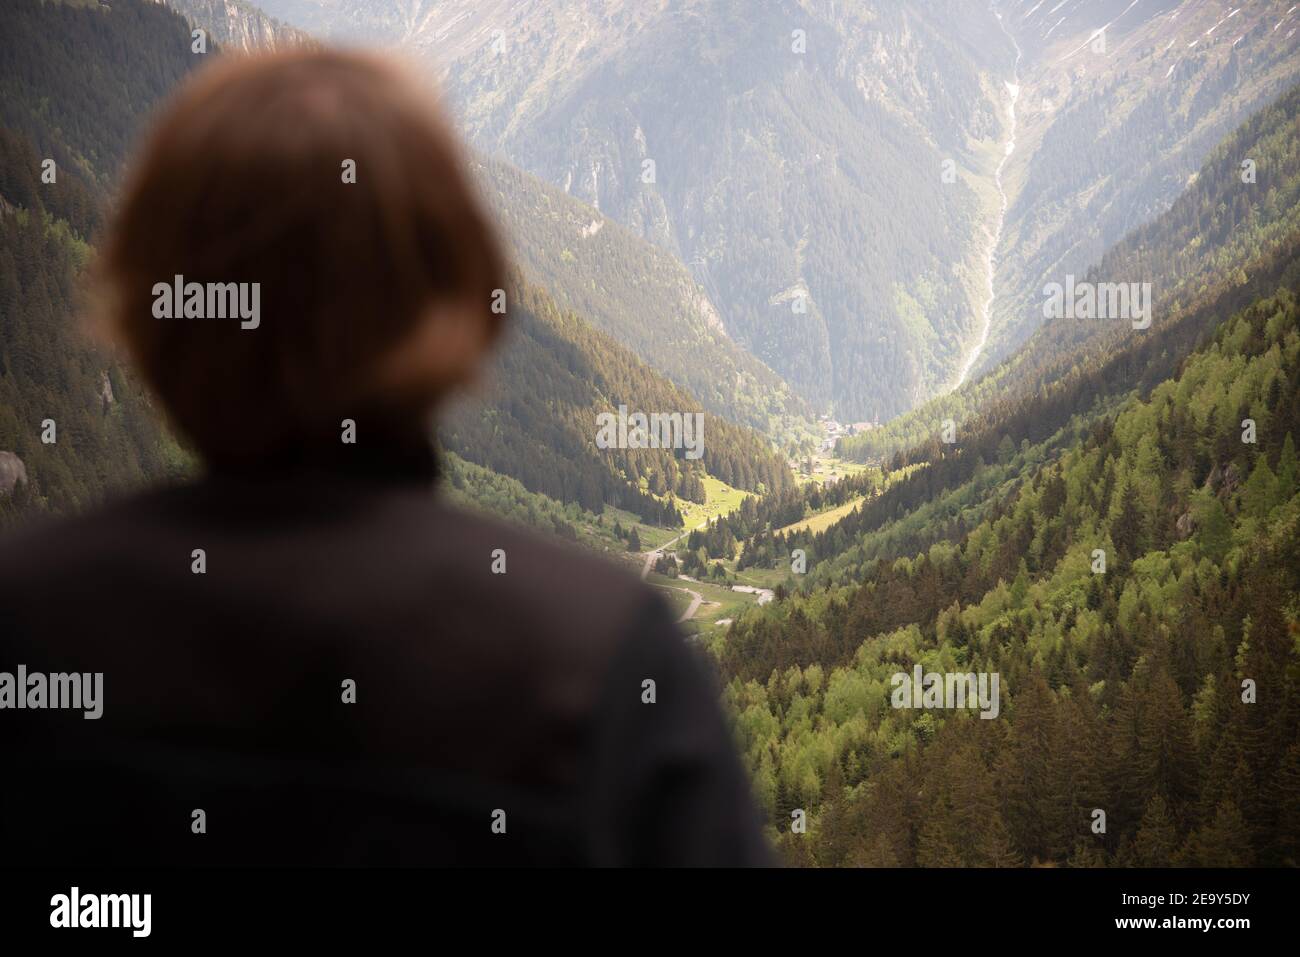 Uomo guardando bellissimo paesaggio montano con valle e foreste Foto Stock